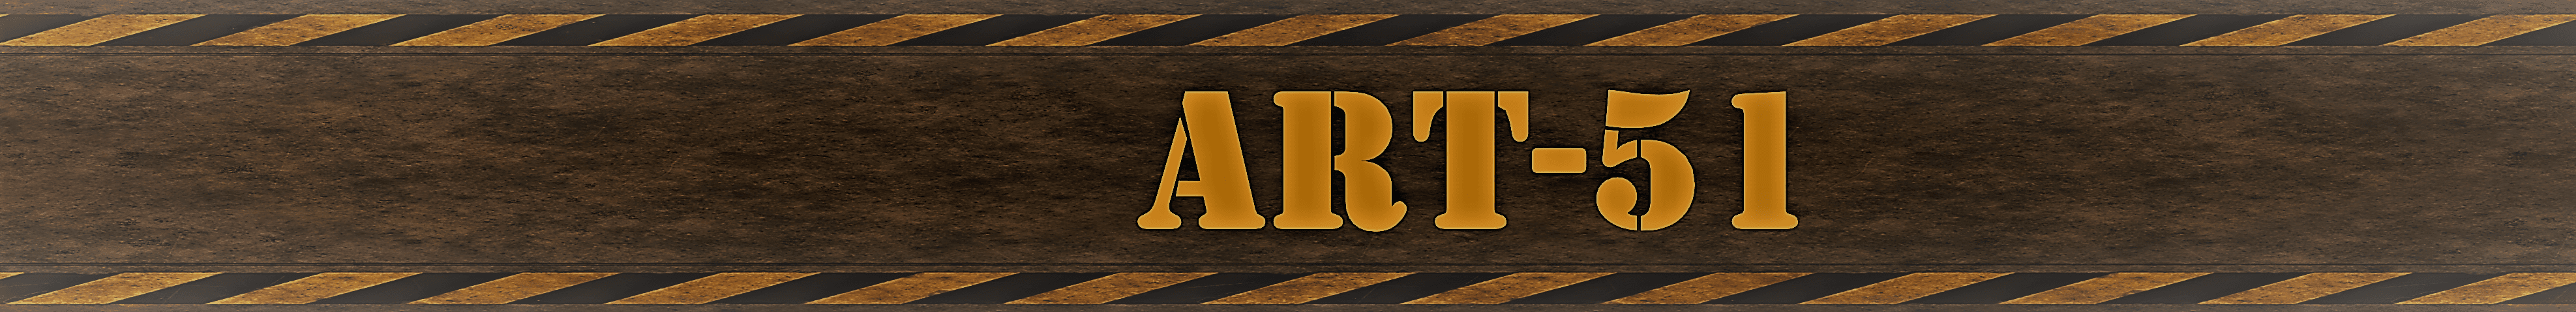 ART-51 banner